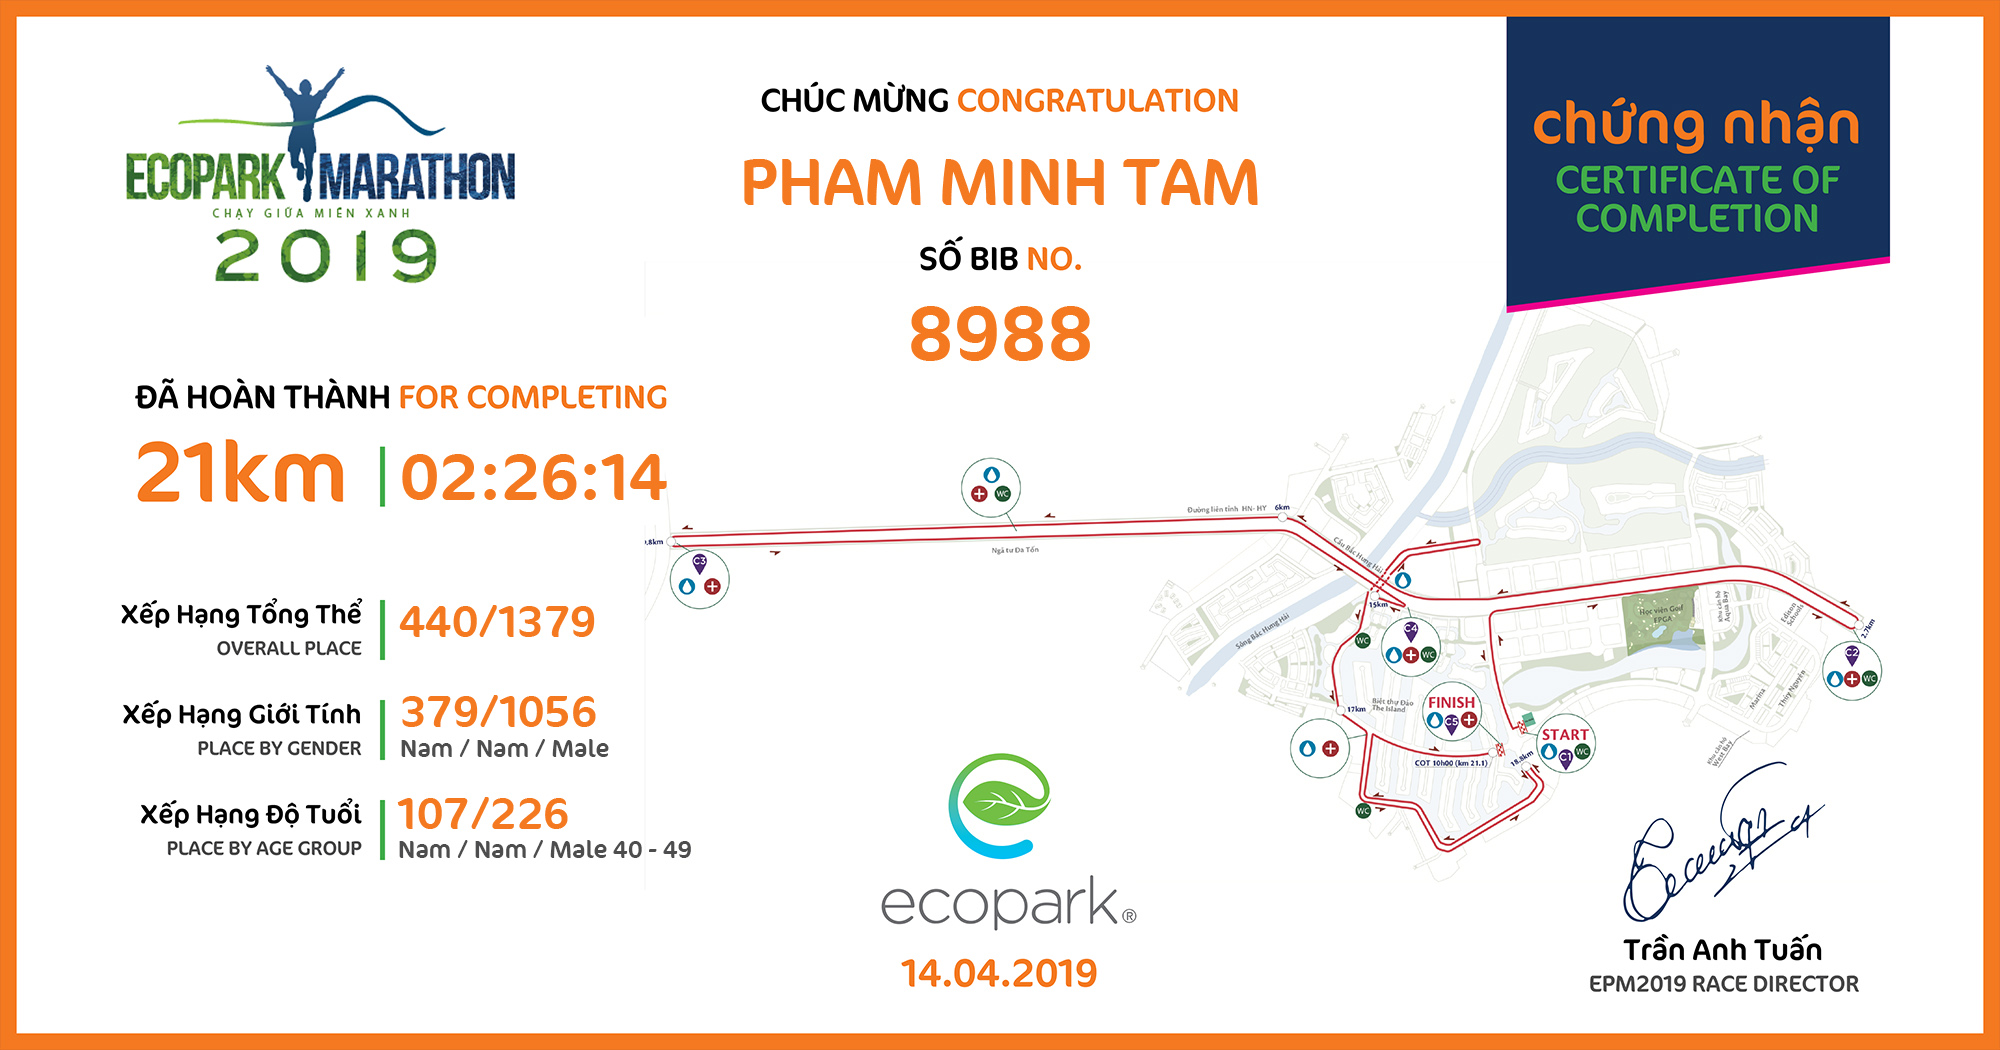 8988 - Pham Minh Tam